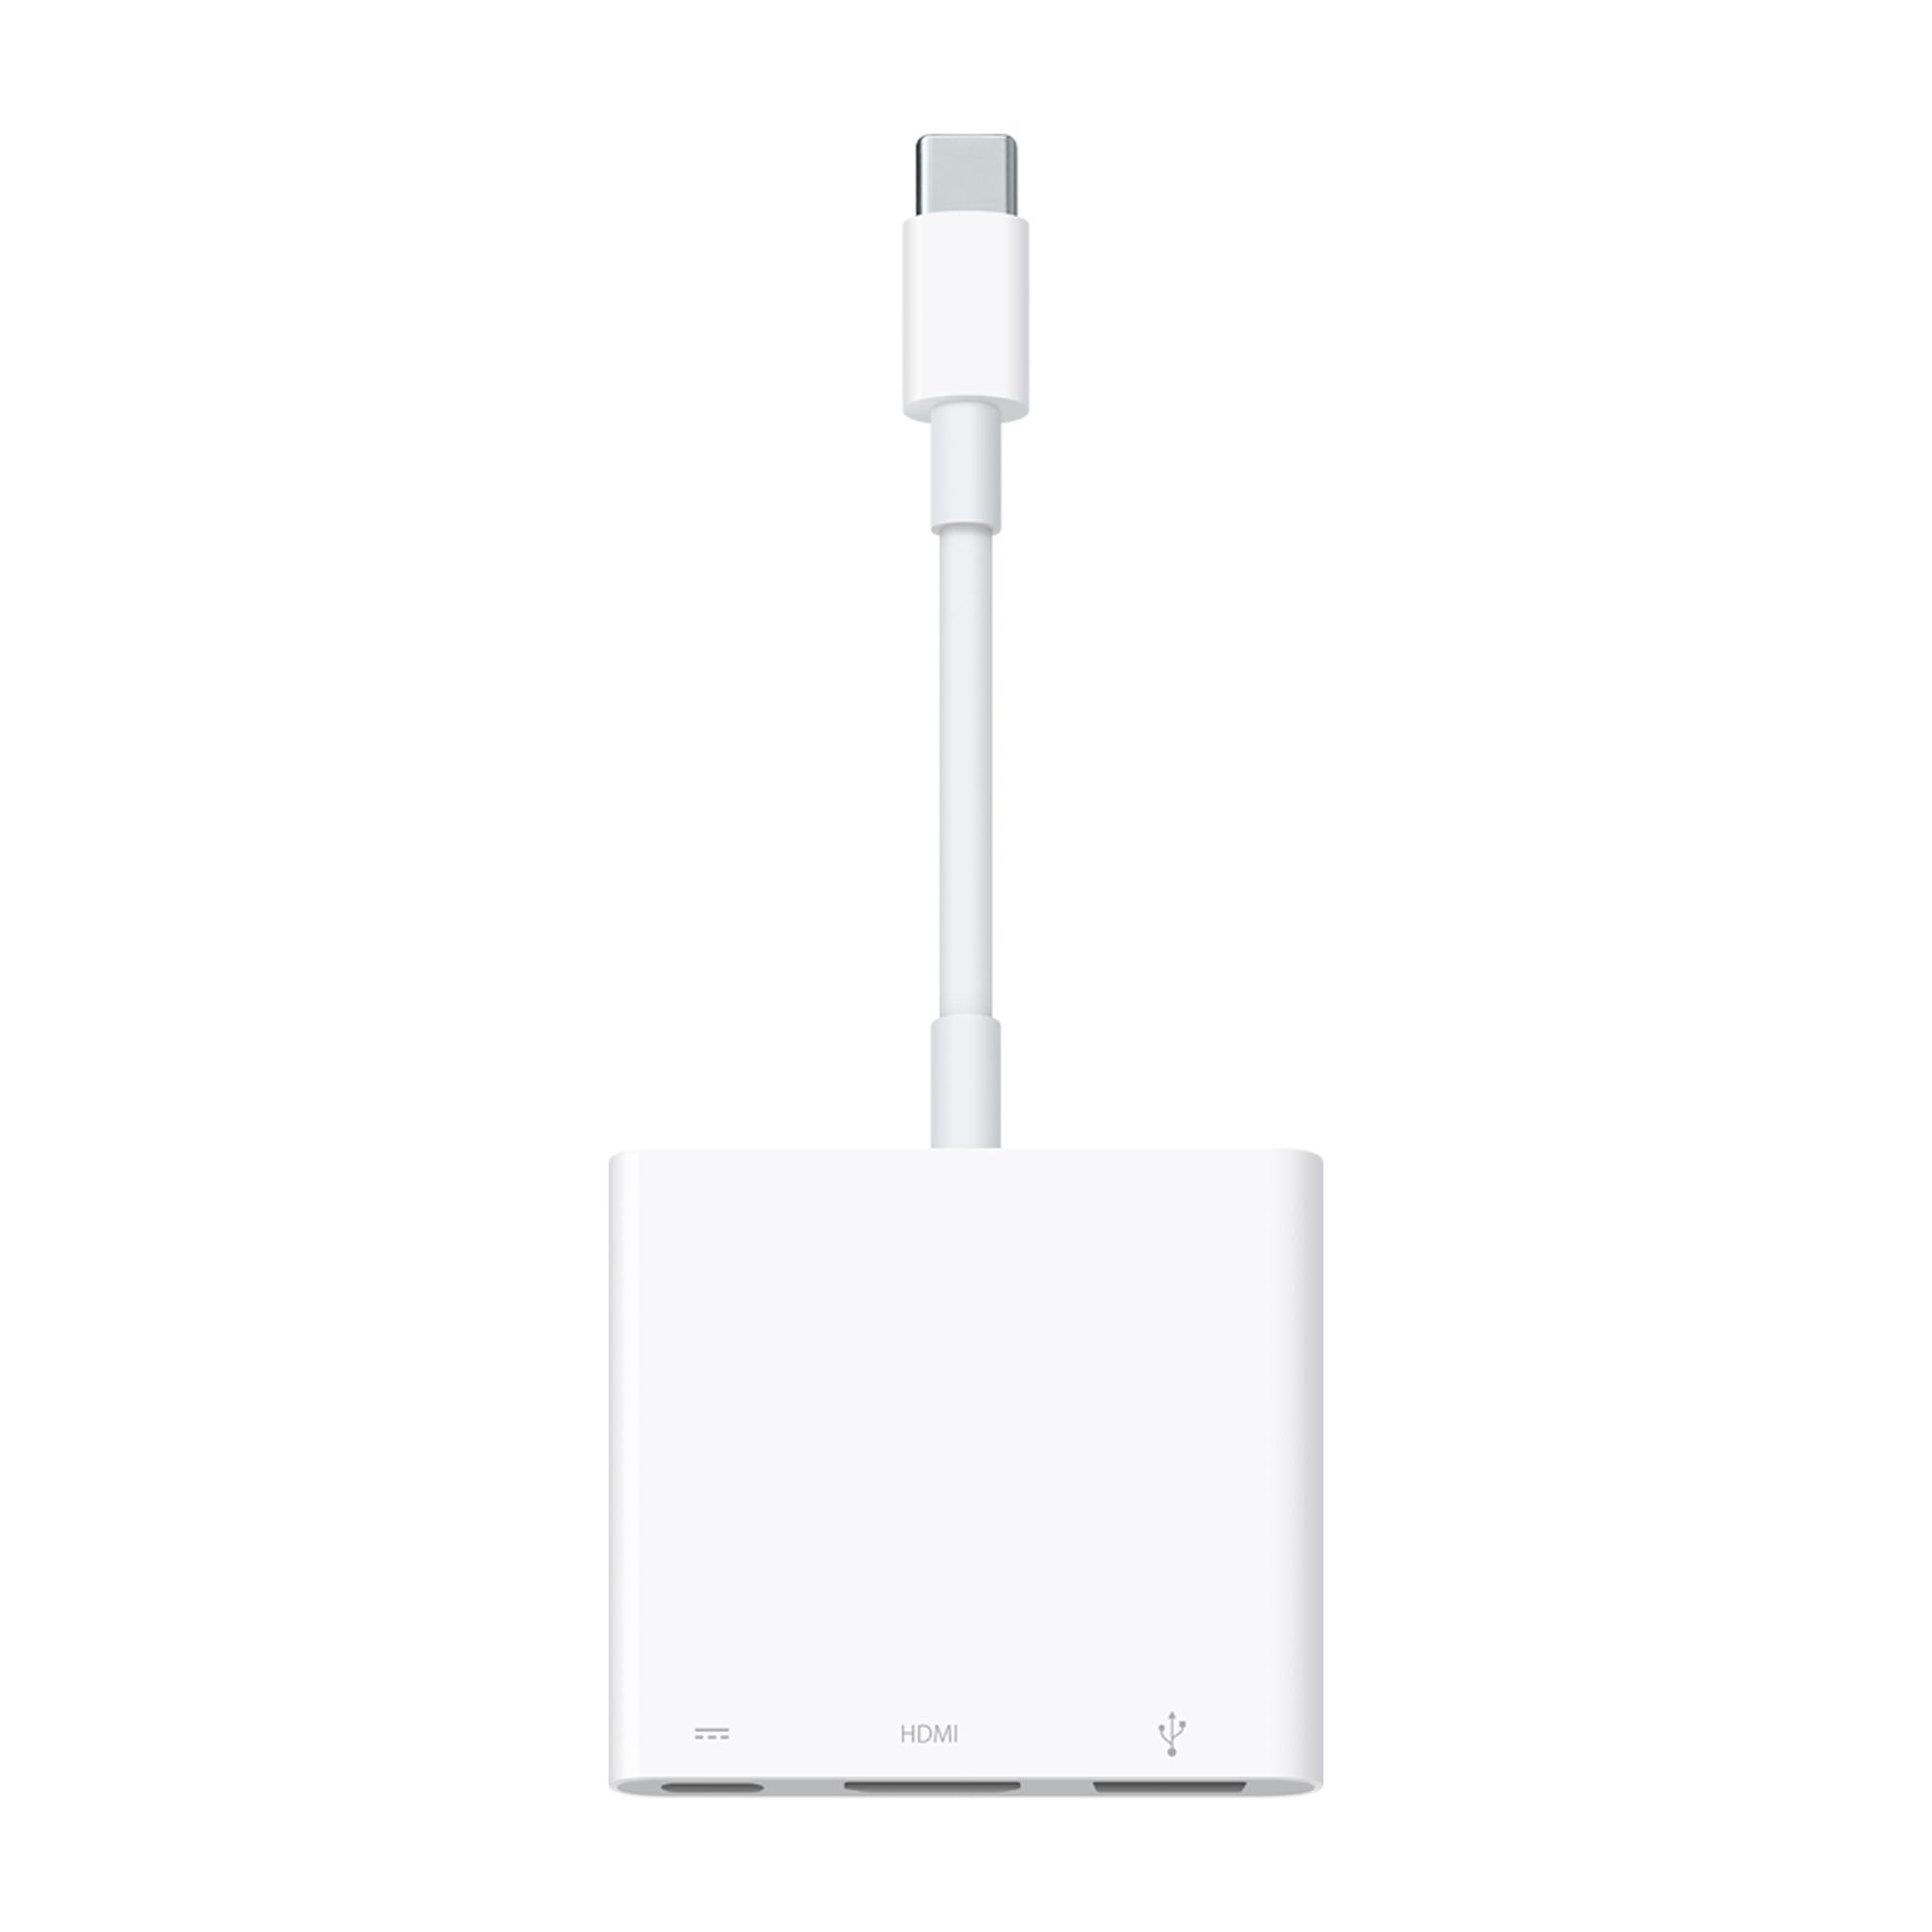 MacBook USB-C Digital AV Multiport Adapter